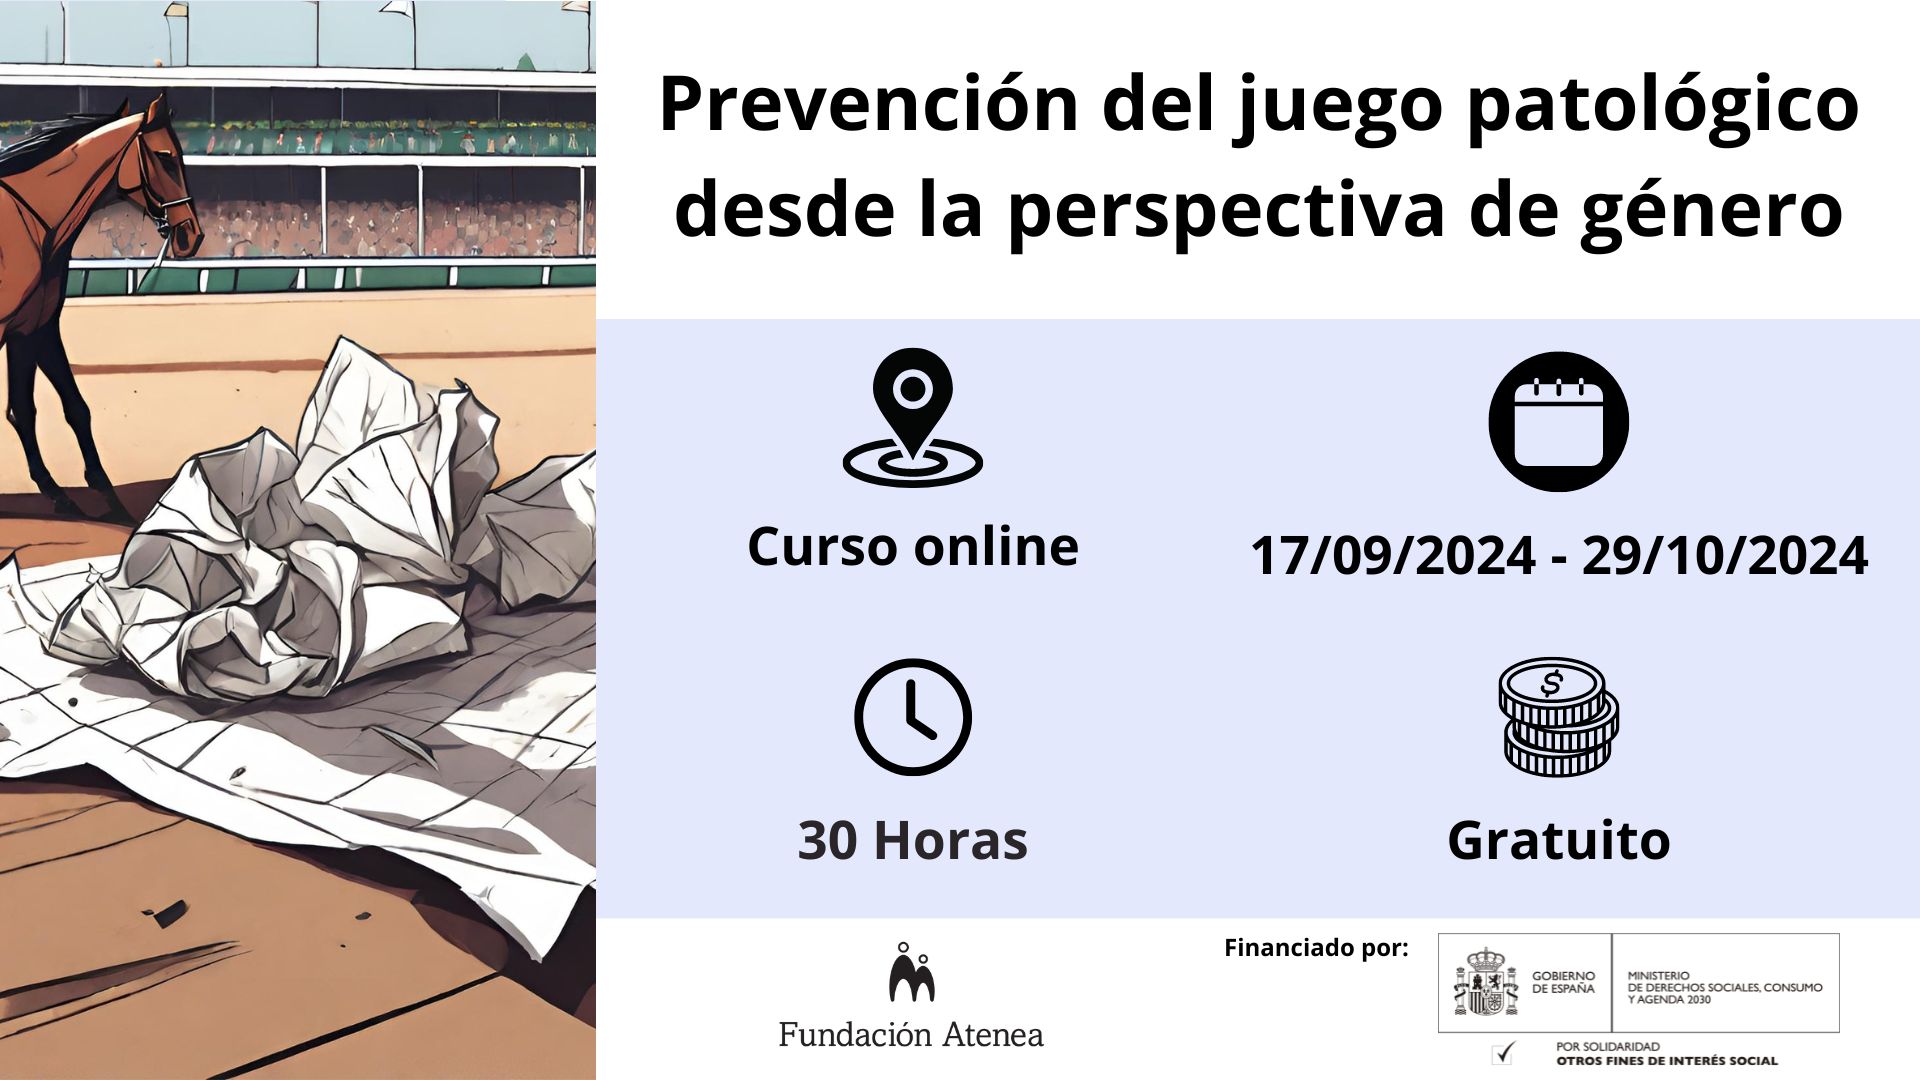 Prevención Juego Patológico desde la perspectiva de género. Curso Online gratuito realizado del 10/09/24 al 29/10/24 (40h)